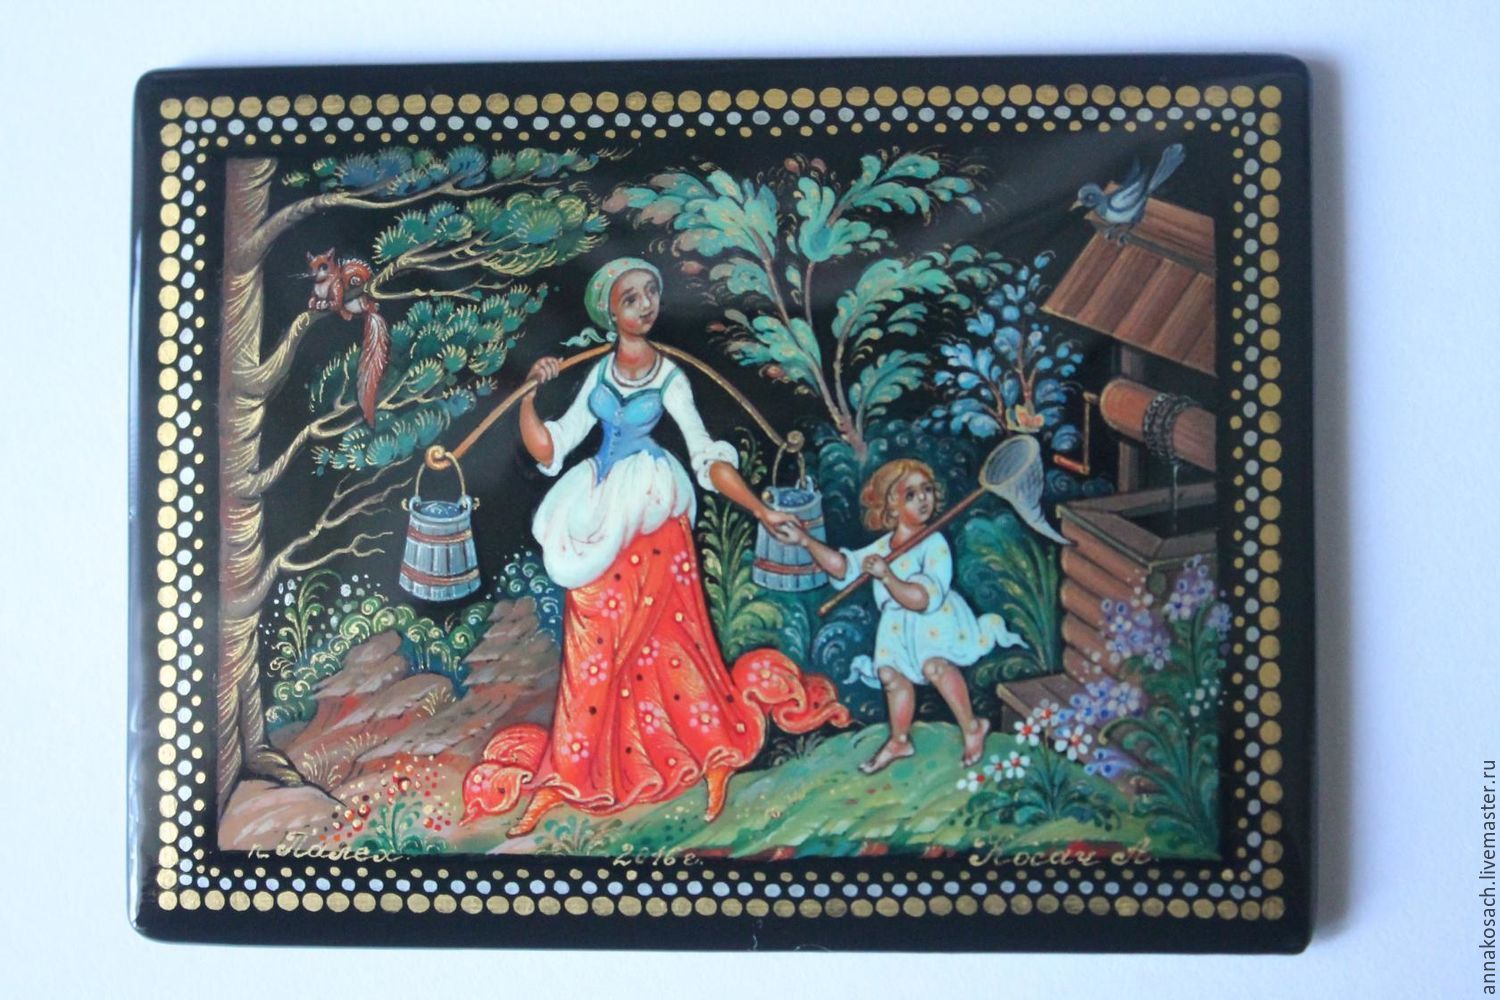 Лаковая шкатулка с авторской росписью "Материнство"